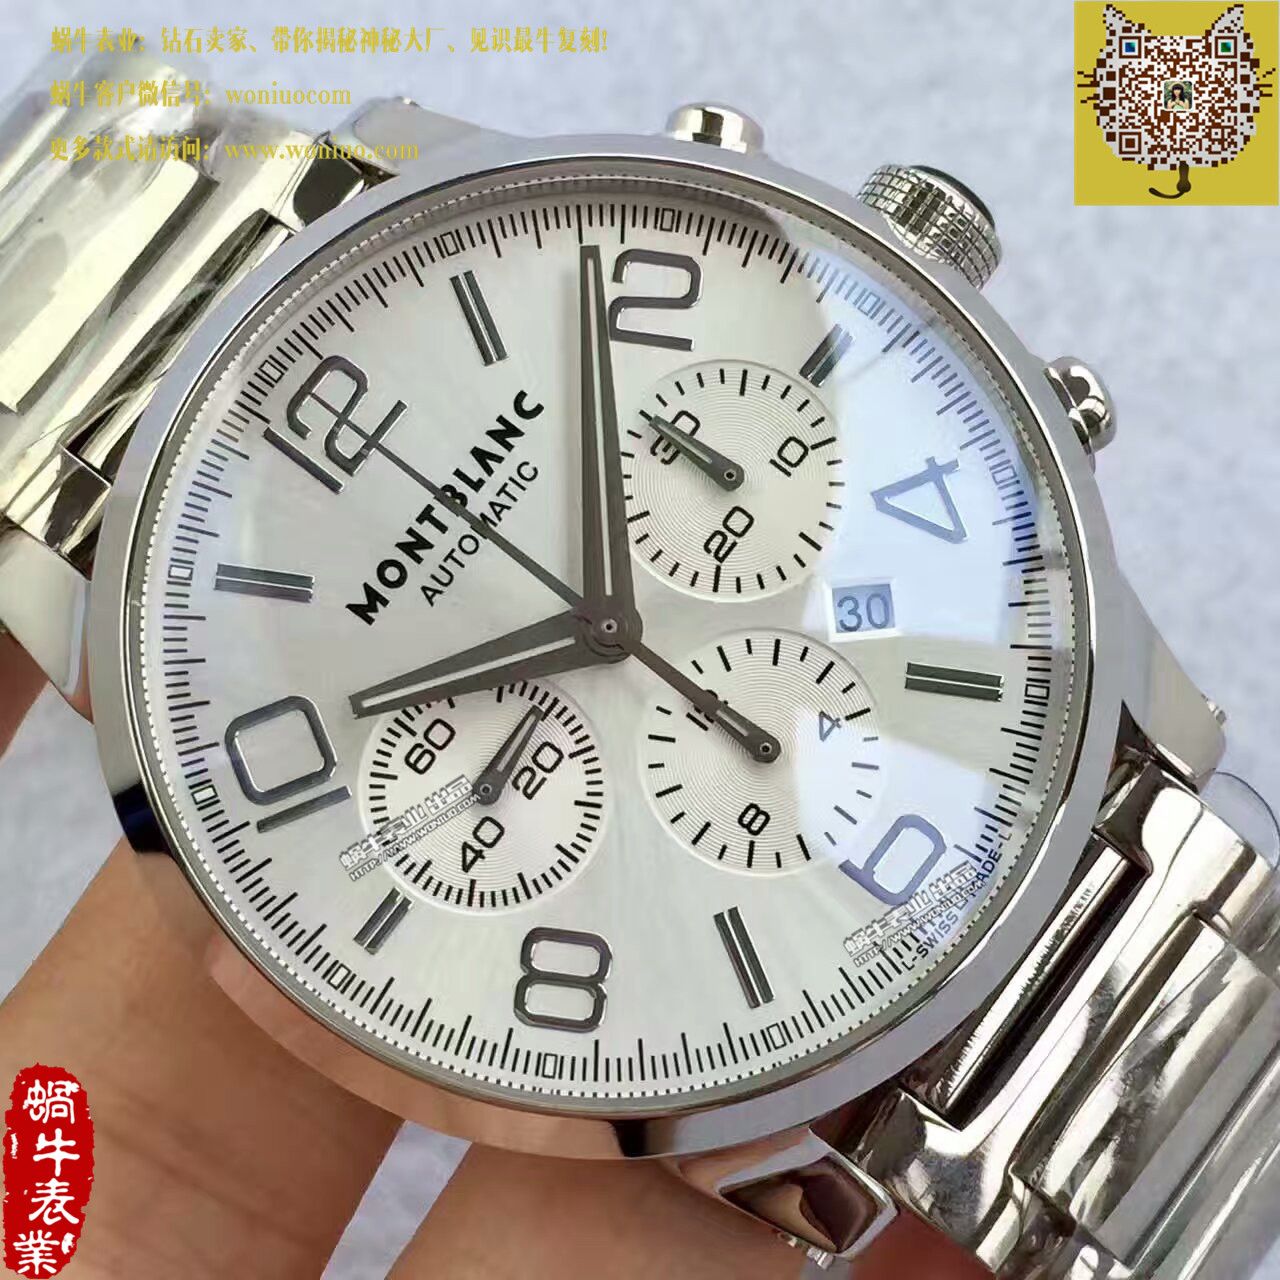 【台湾厂一比一顶级复刻手表】万宝龙时光行者系列09671腕表 